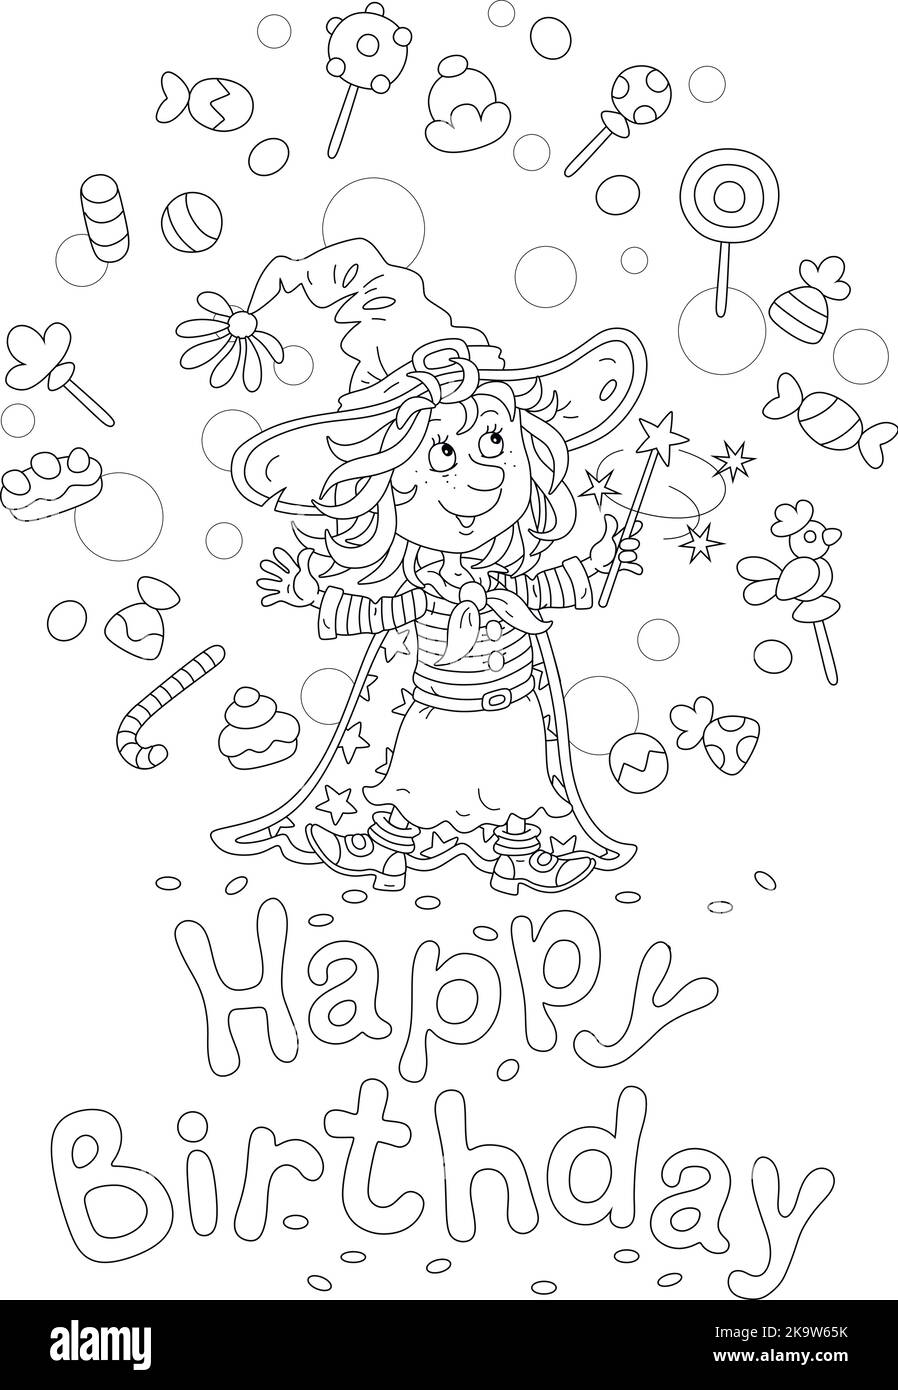 Buon compleanno con una divertente strega sventolando la sua bacchetta magica e evocando trucchi divertenti con dolci volanti Illustrazione Vettoriale